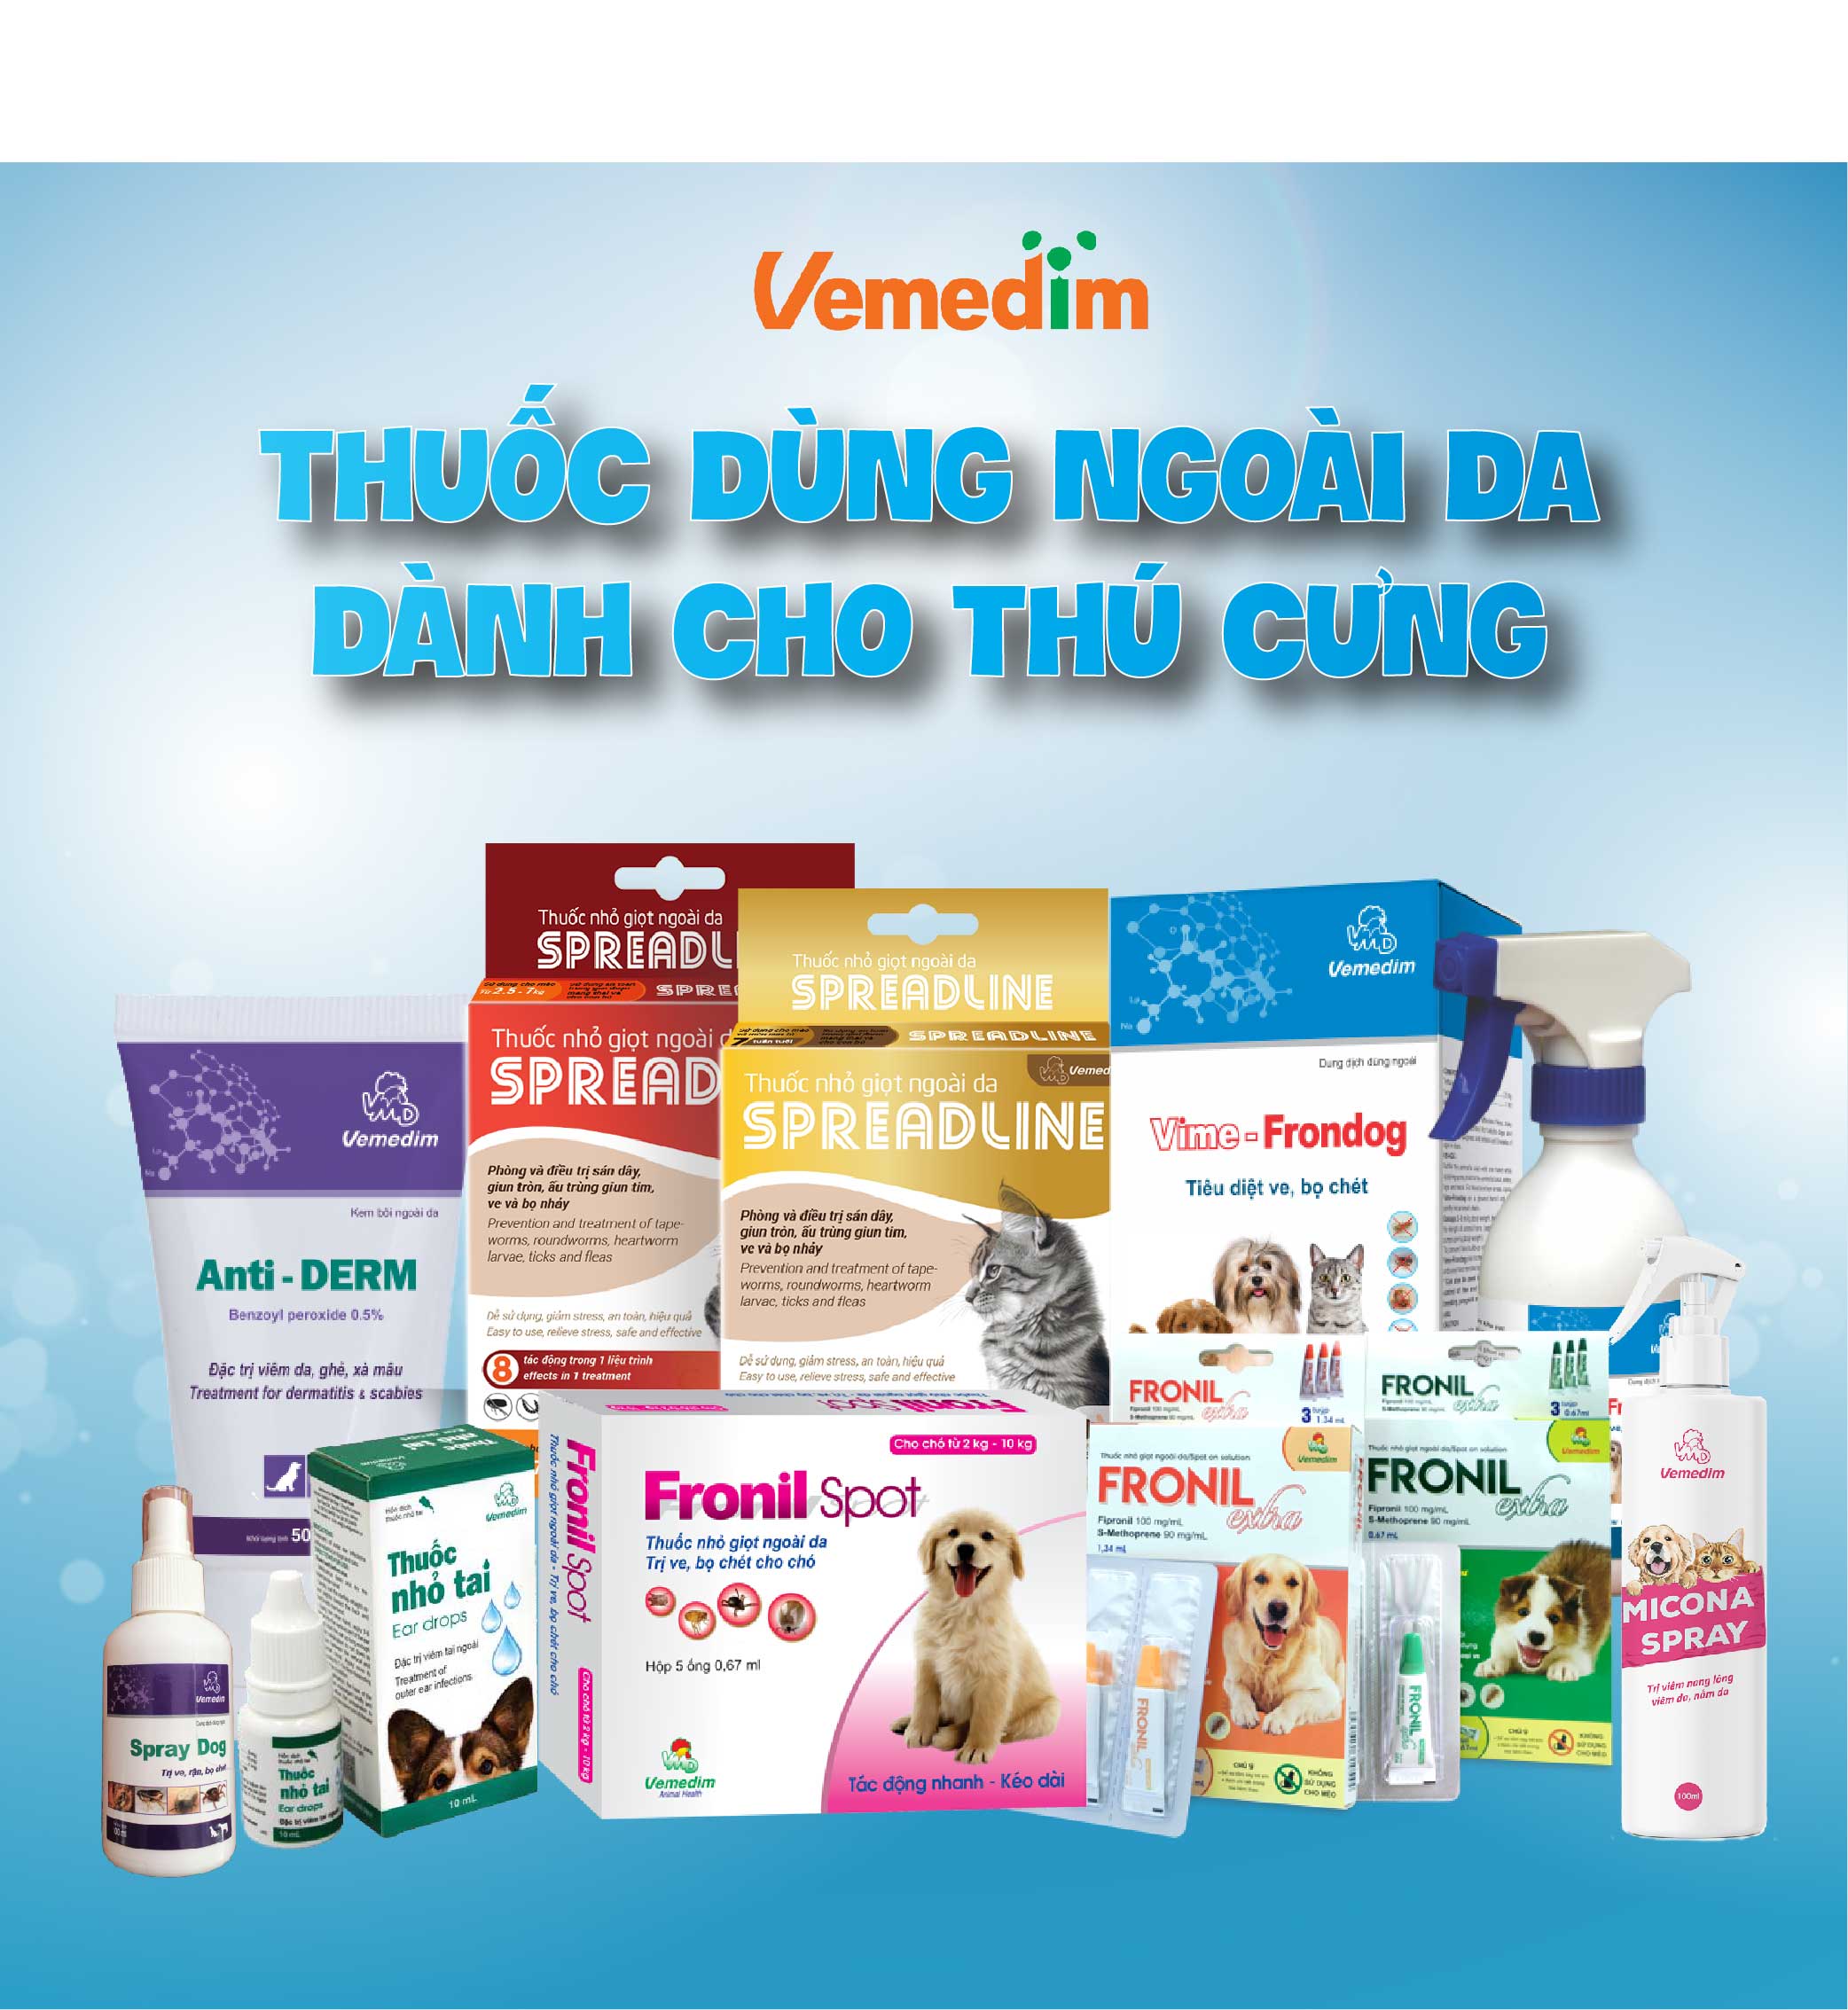 Vemedim Respicure Paste dùng cho chó, mèo bị hô hấp, tiêu hóa, ống dạng gel 10ml